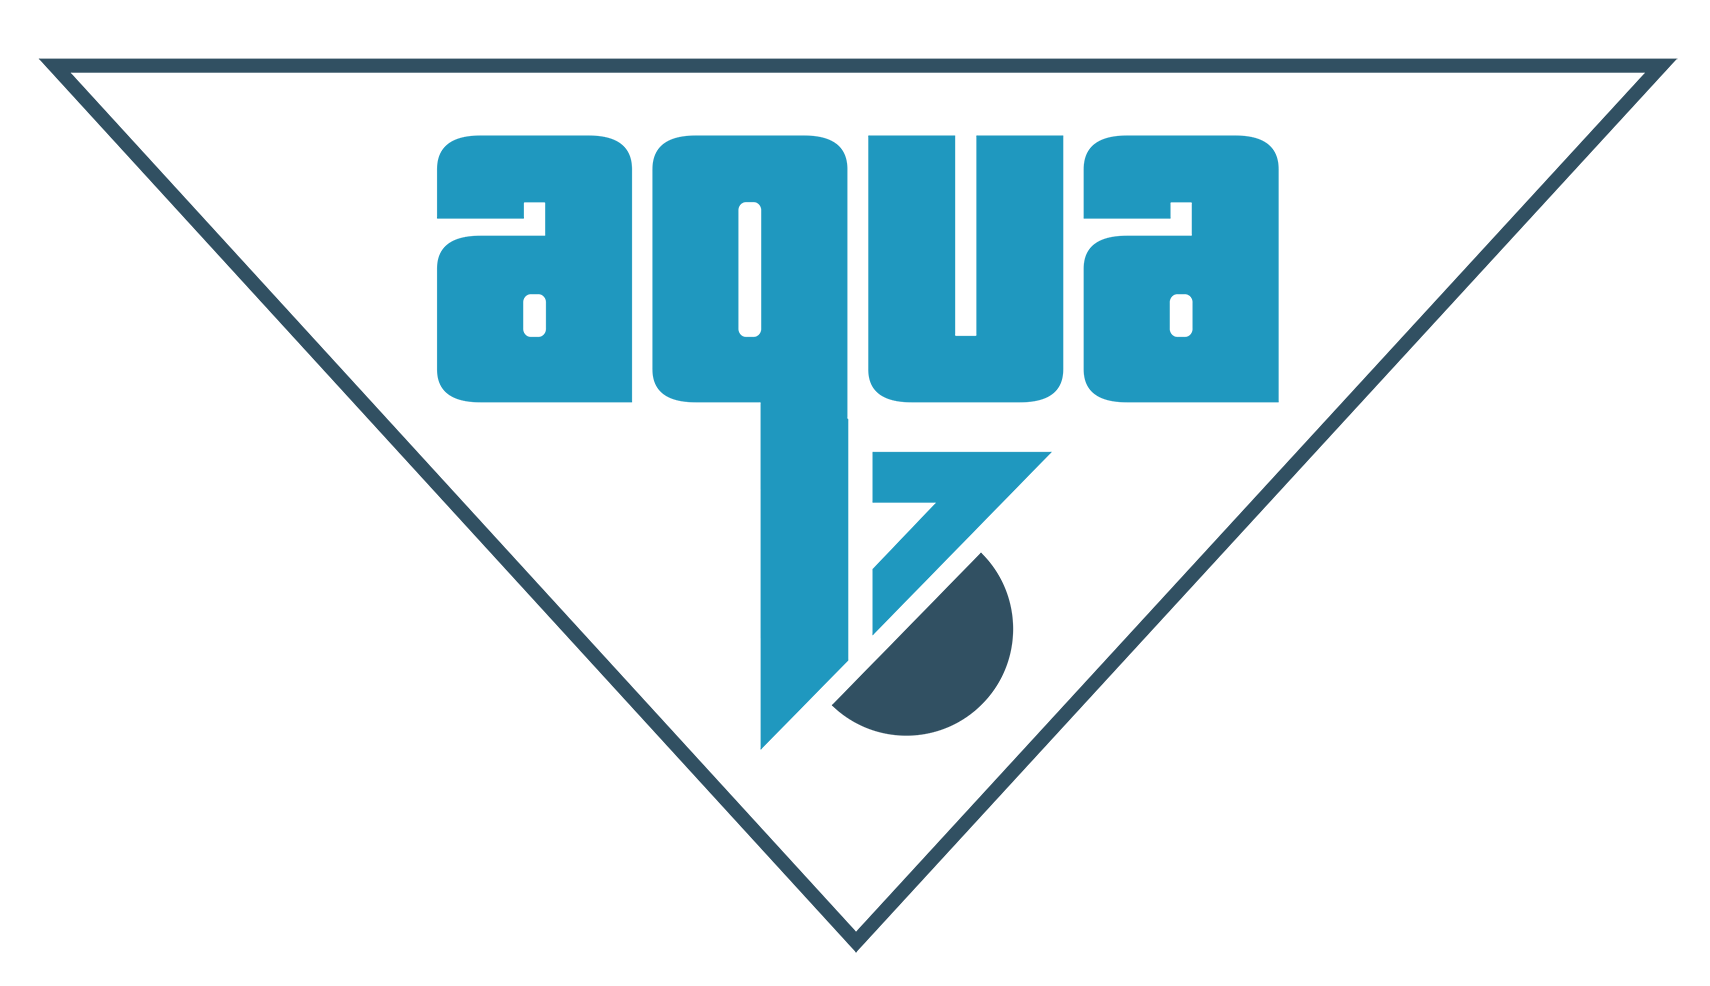 Aqua3